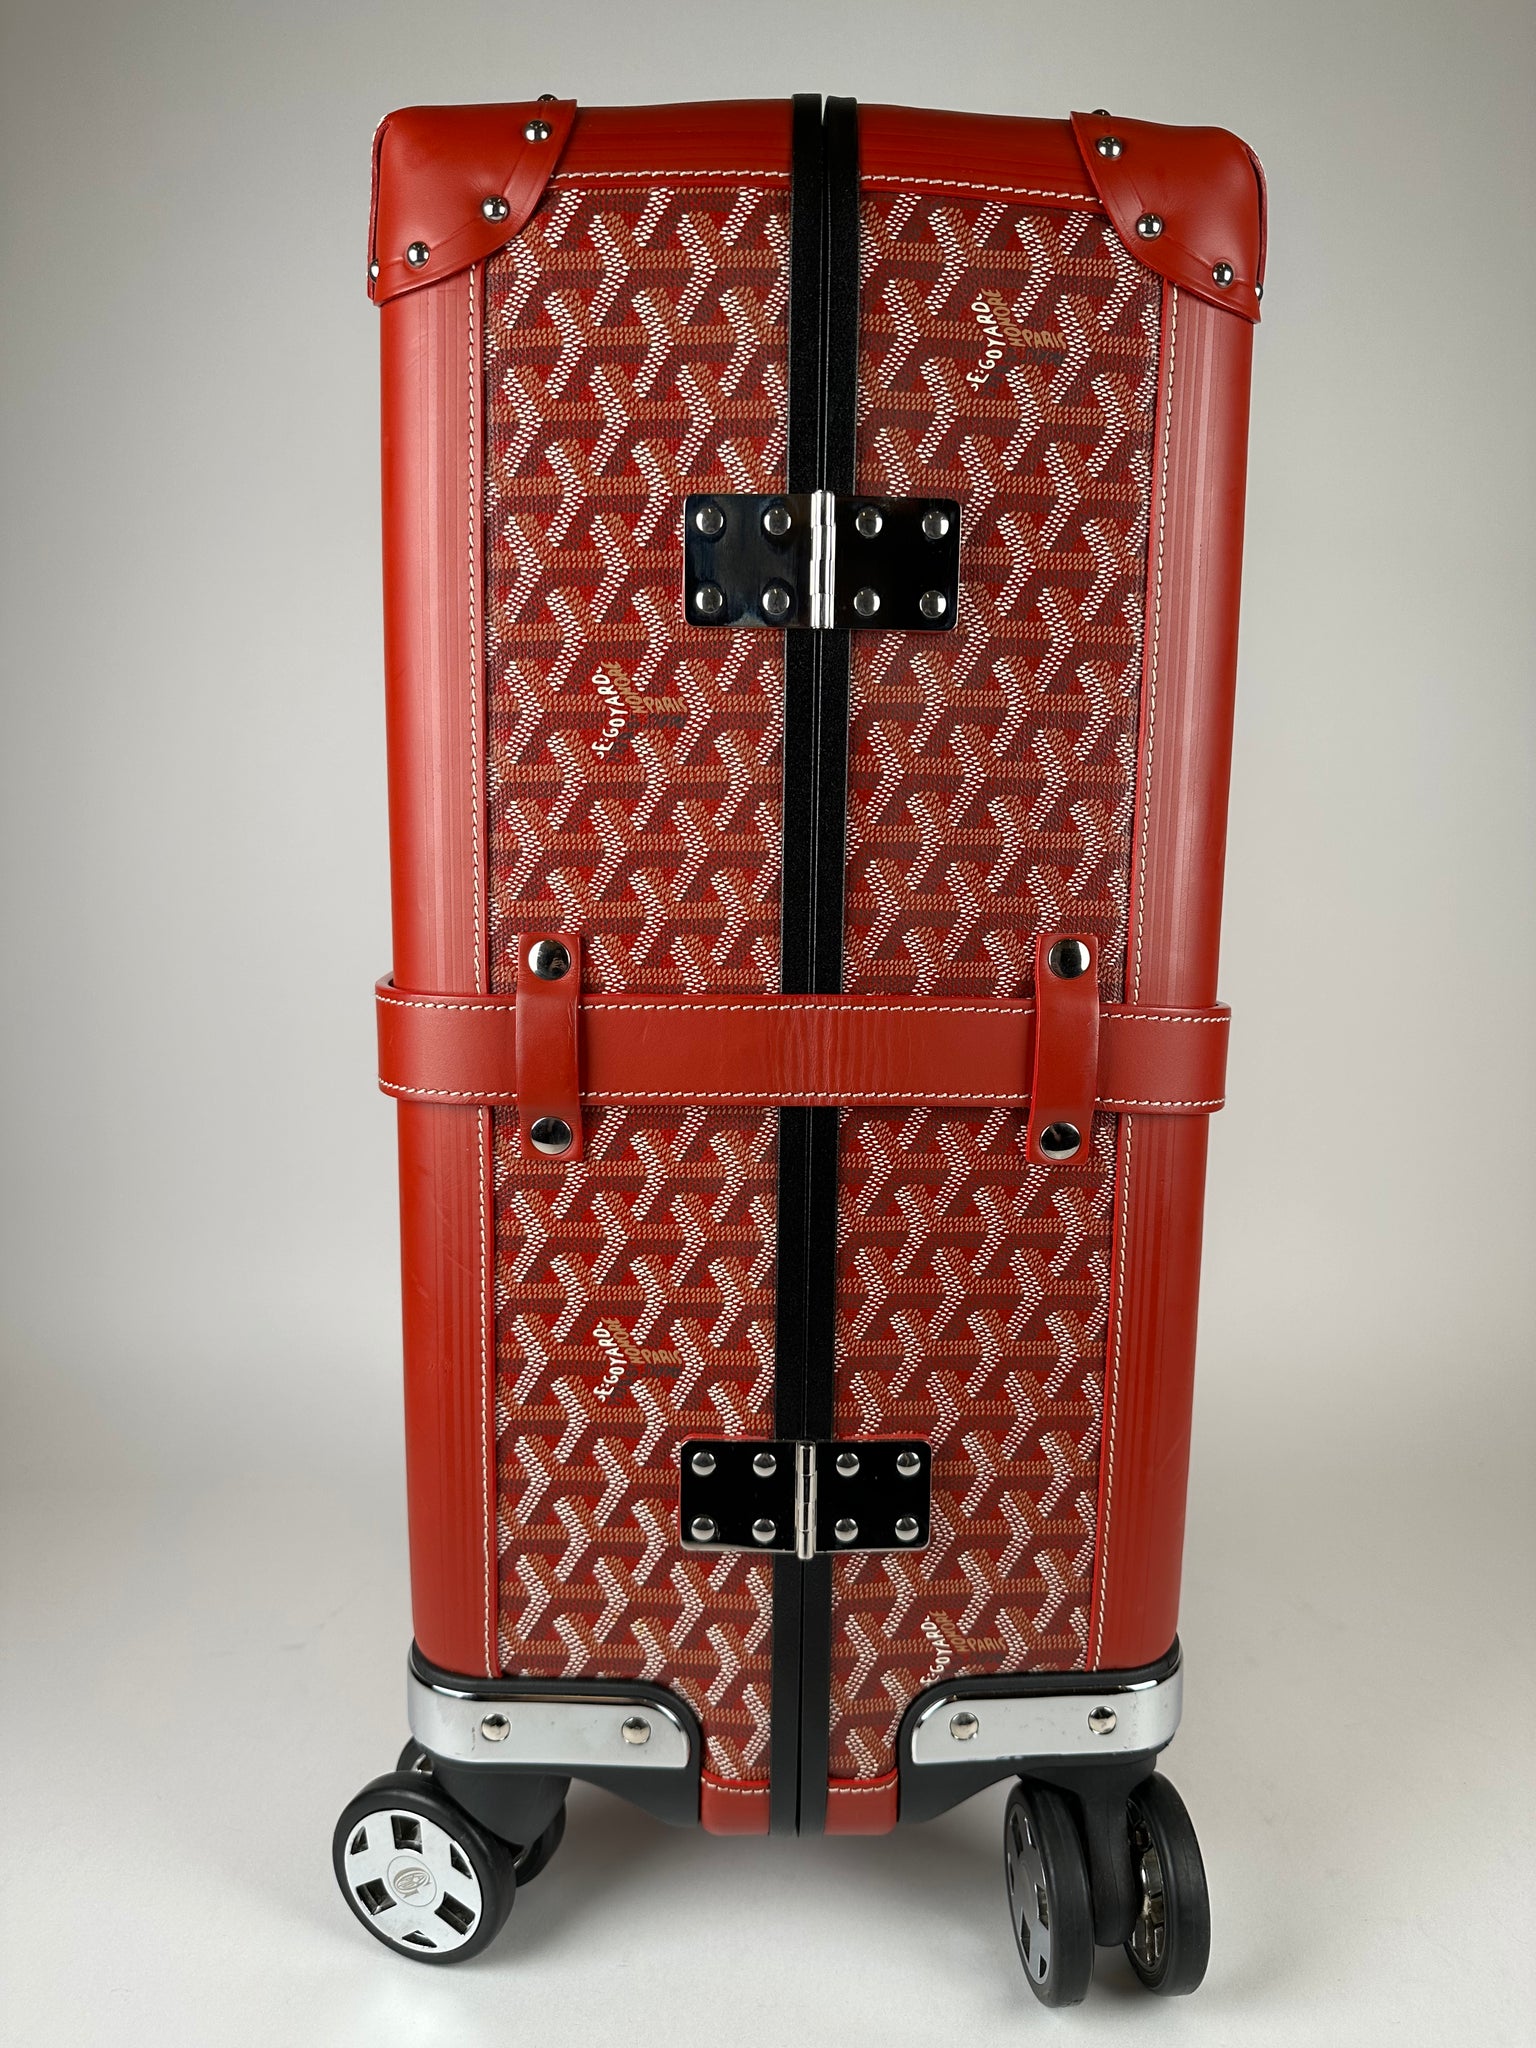 Goyard Goyardine Bourget PM - Suitcases, Luggage